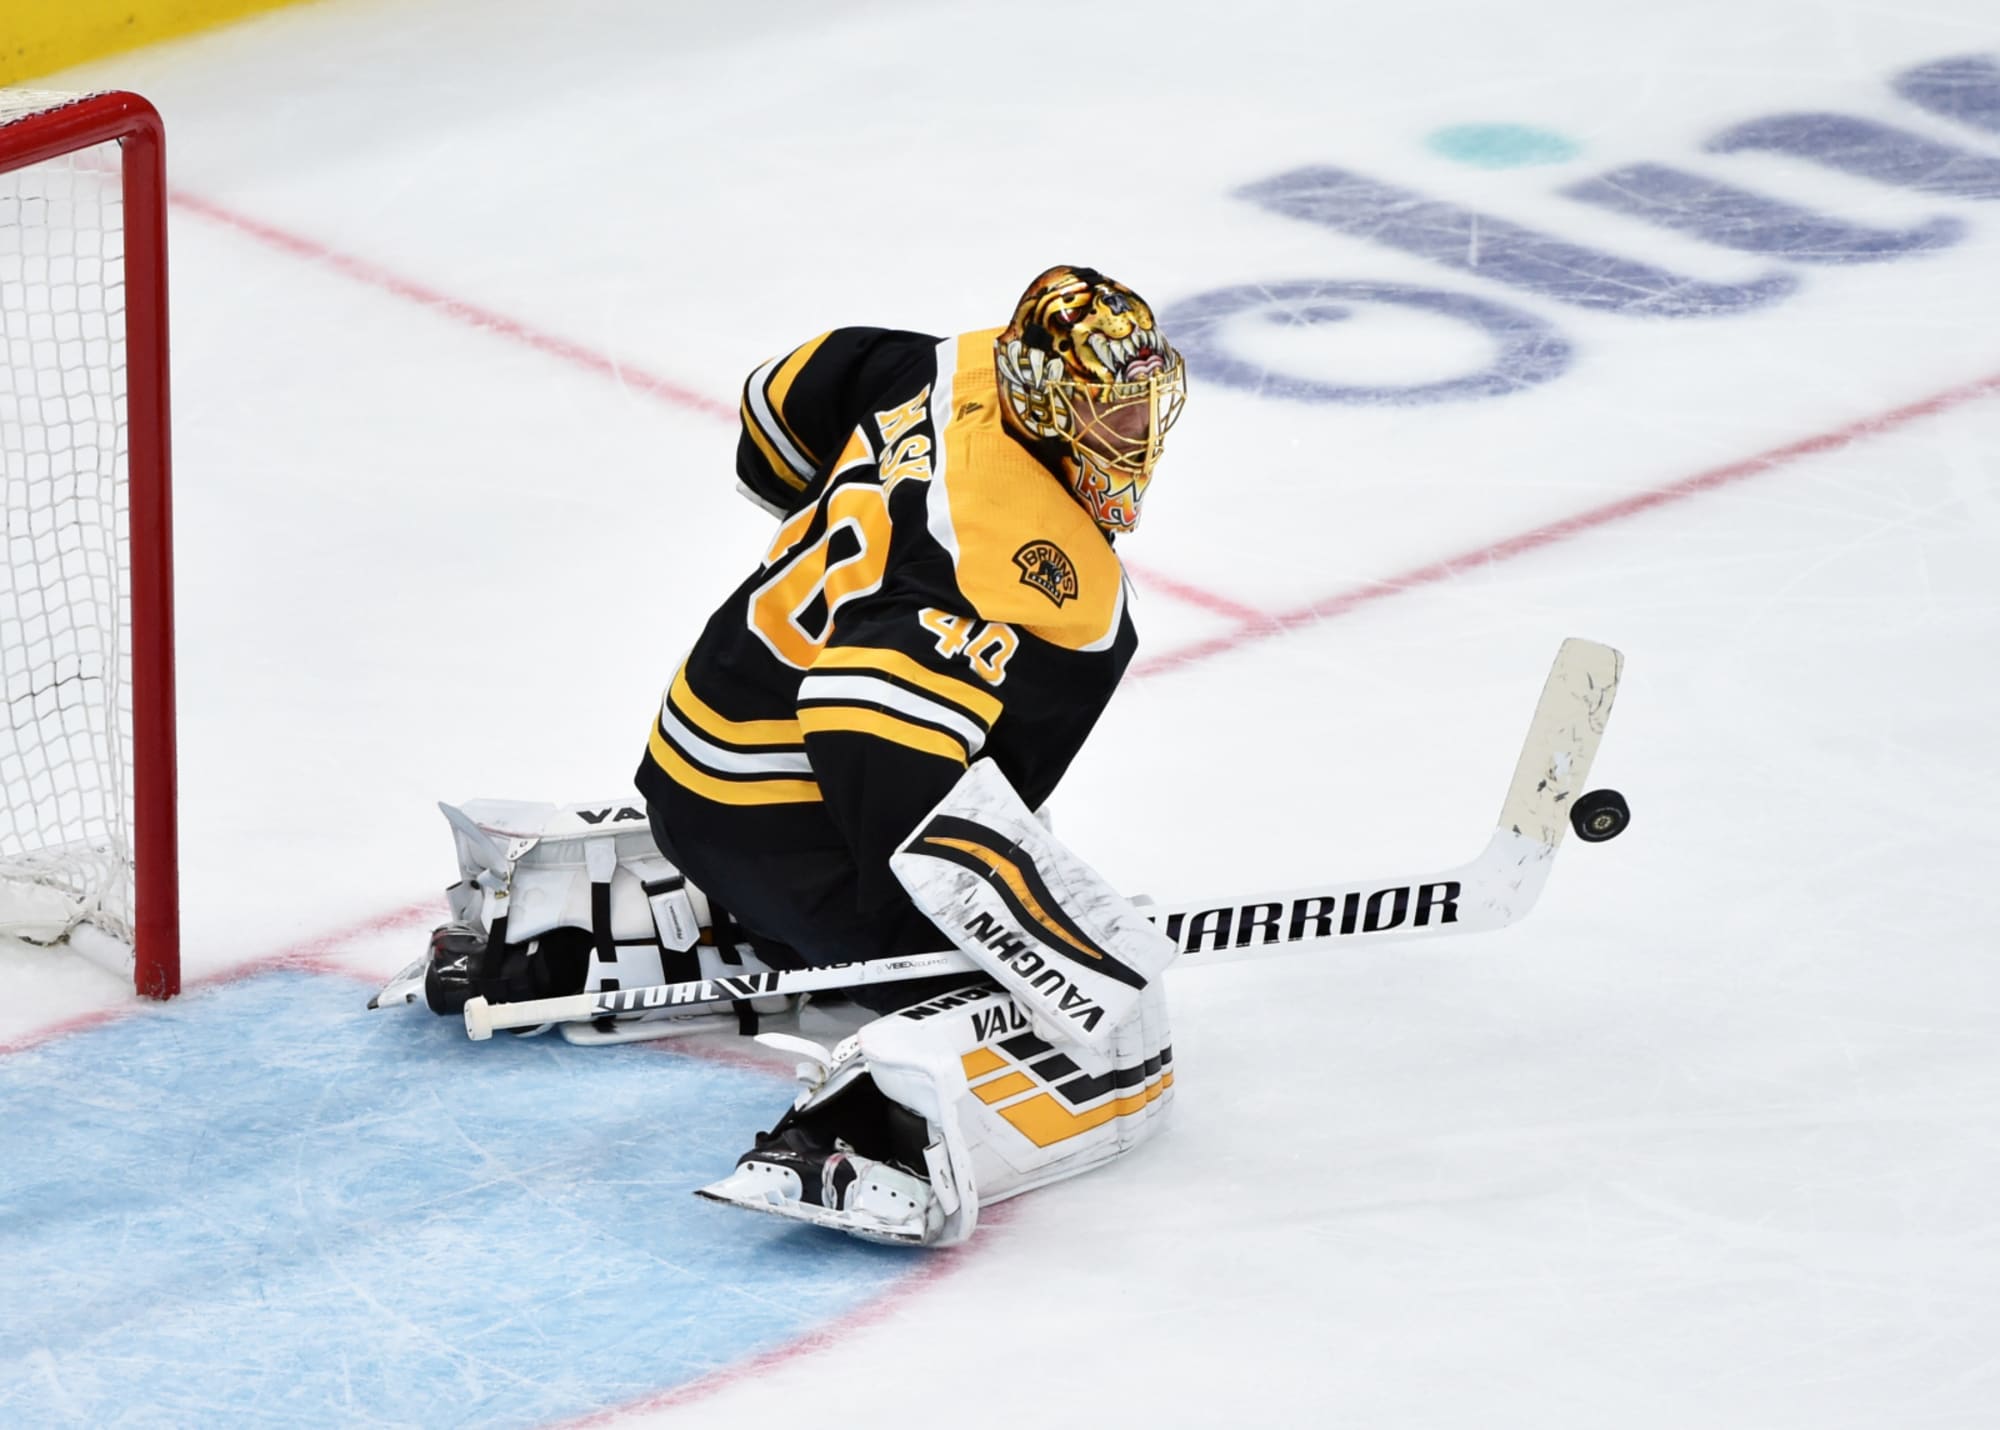 2011-12 Boston Bruins Player Report Cards: Tuukka Rask - Stanley